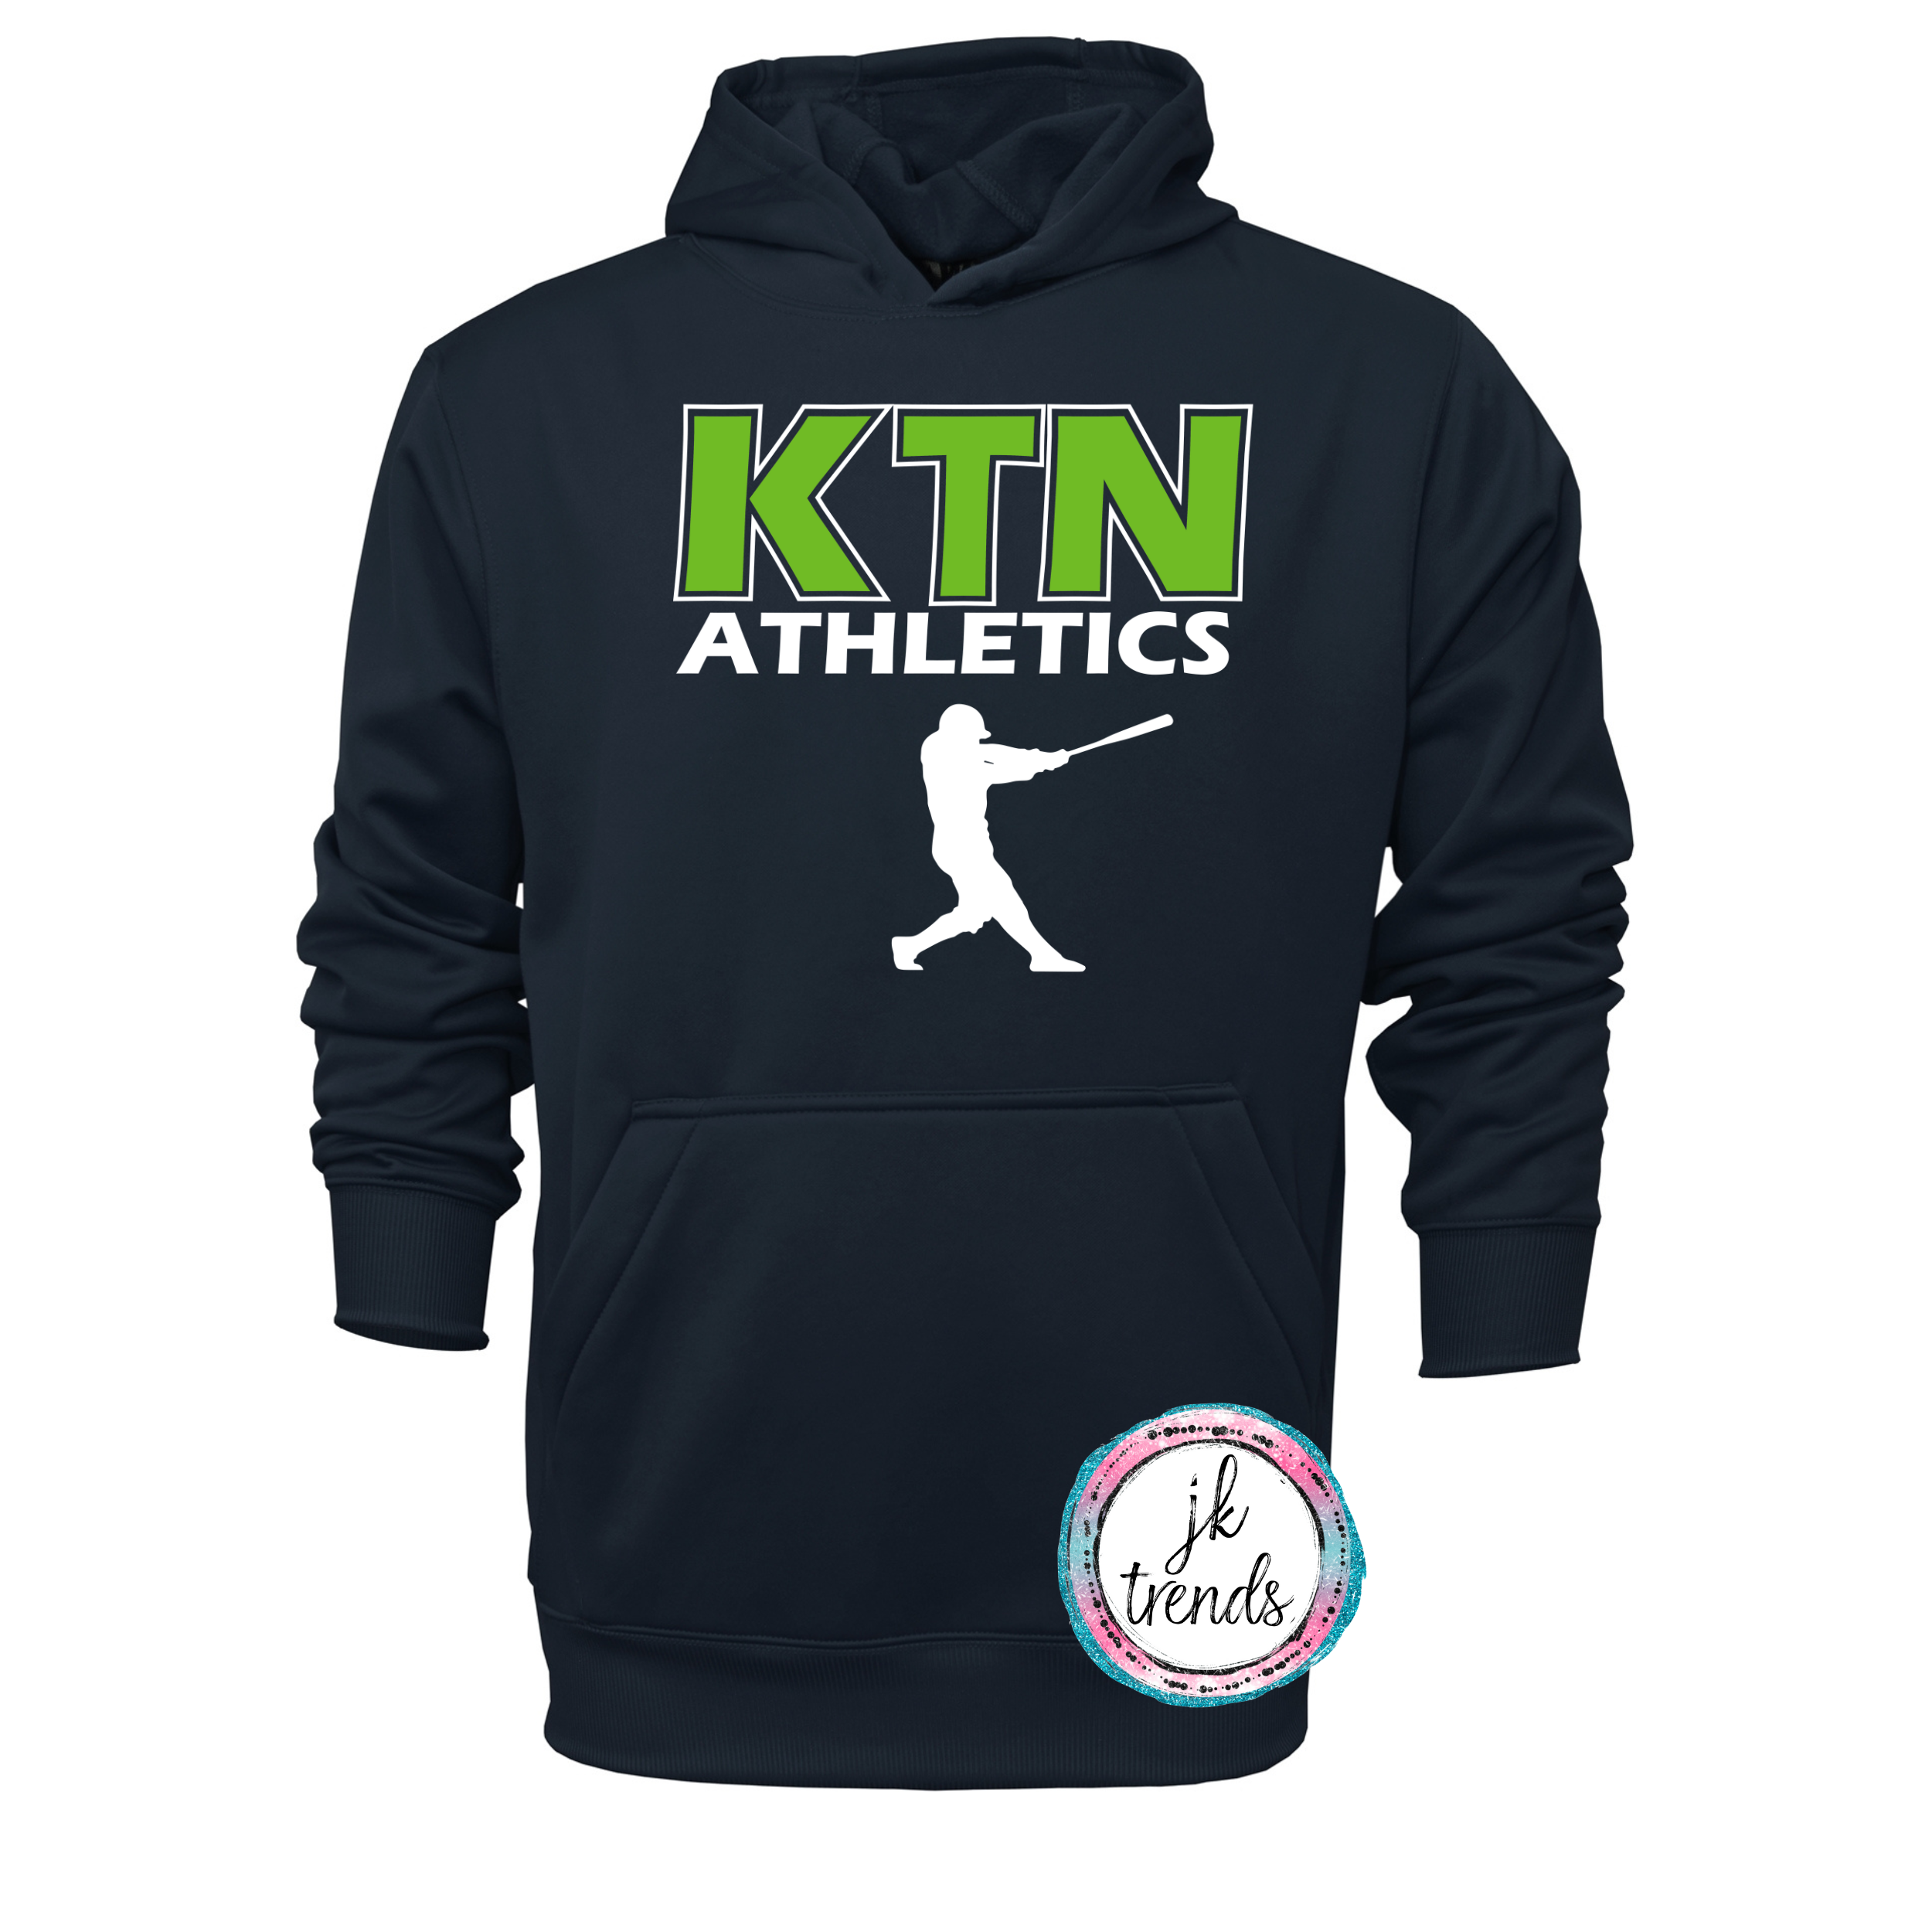 KTN Athletics Baseball Adult Performance Pullover Hooded Sweatshirt